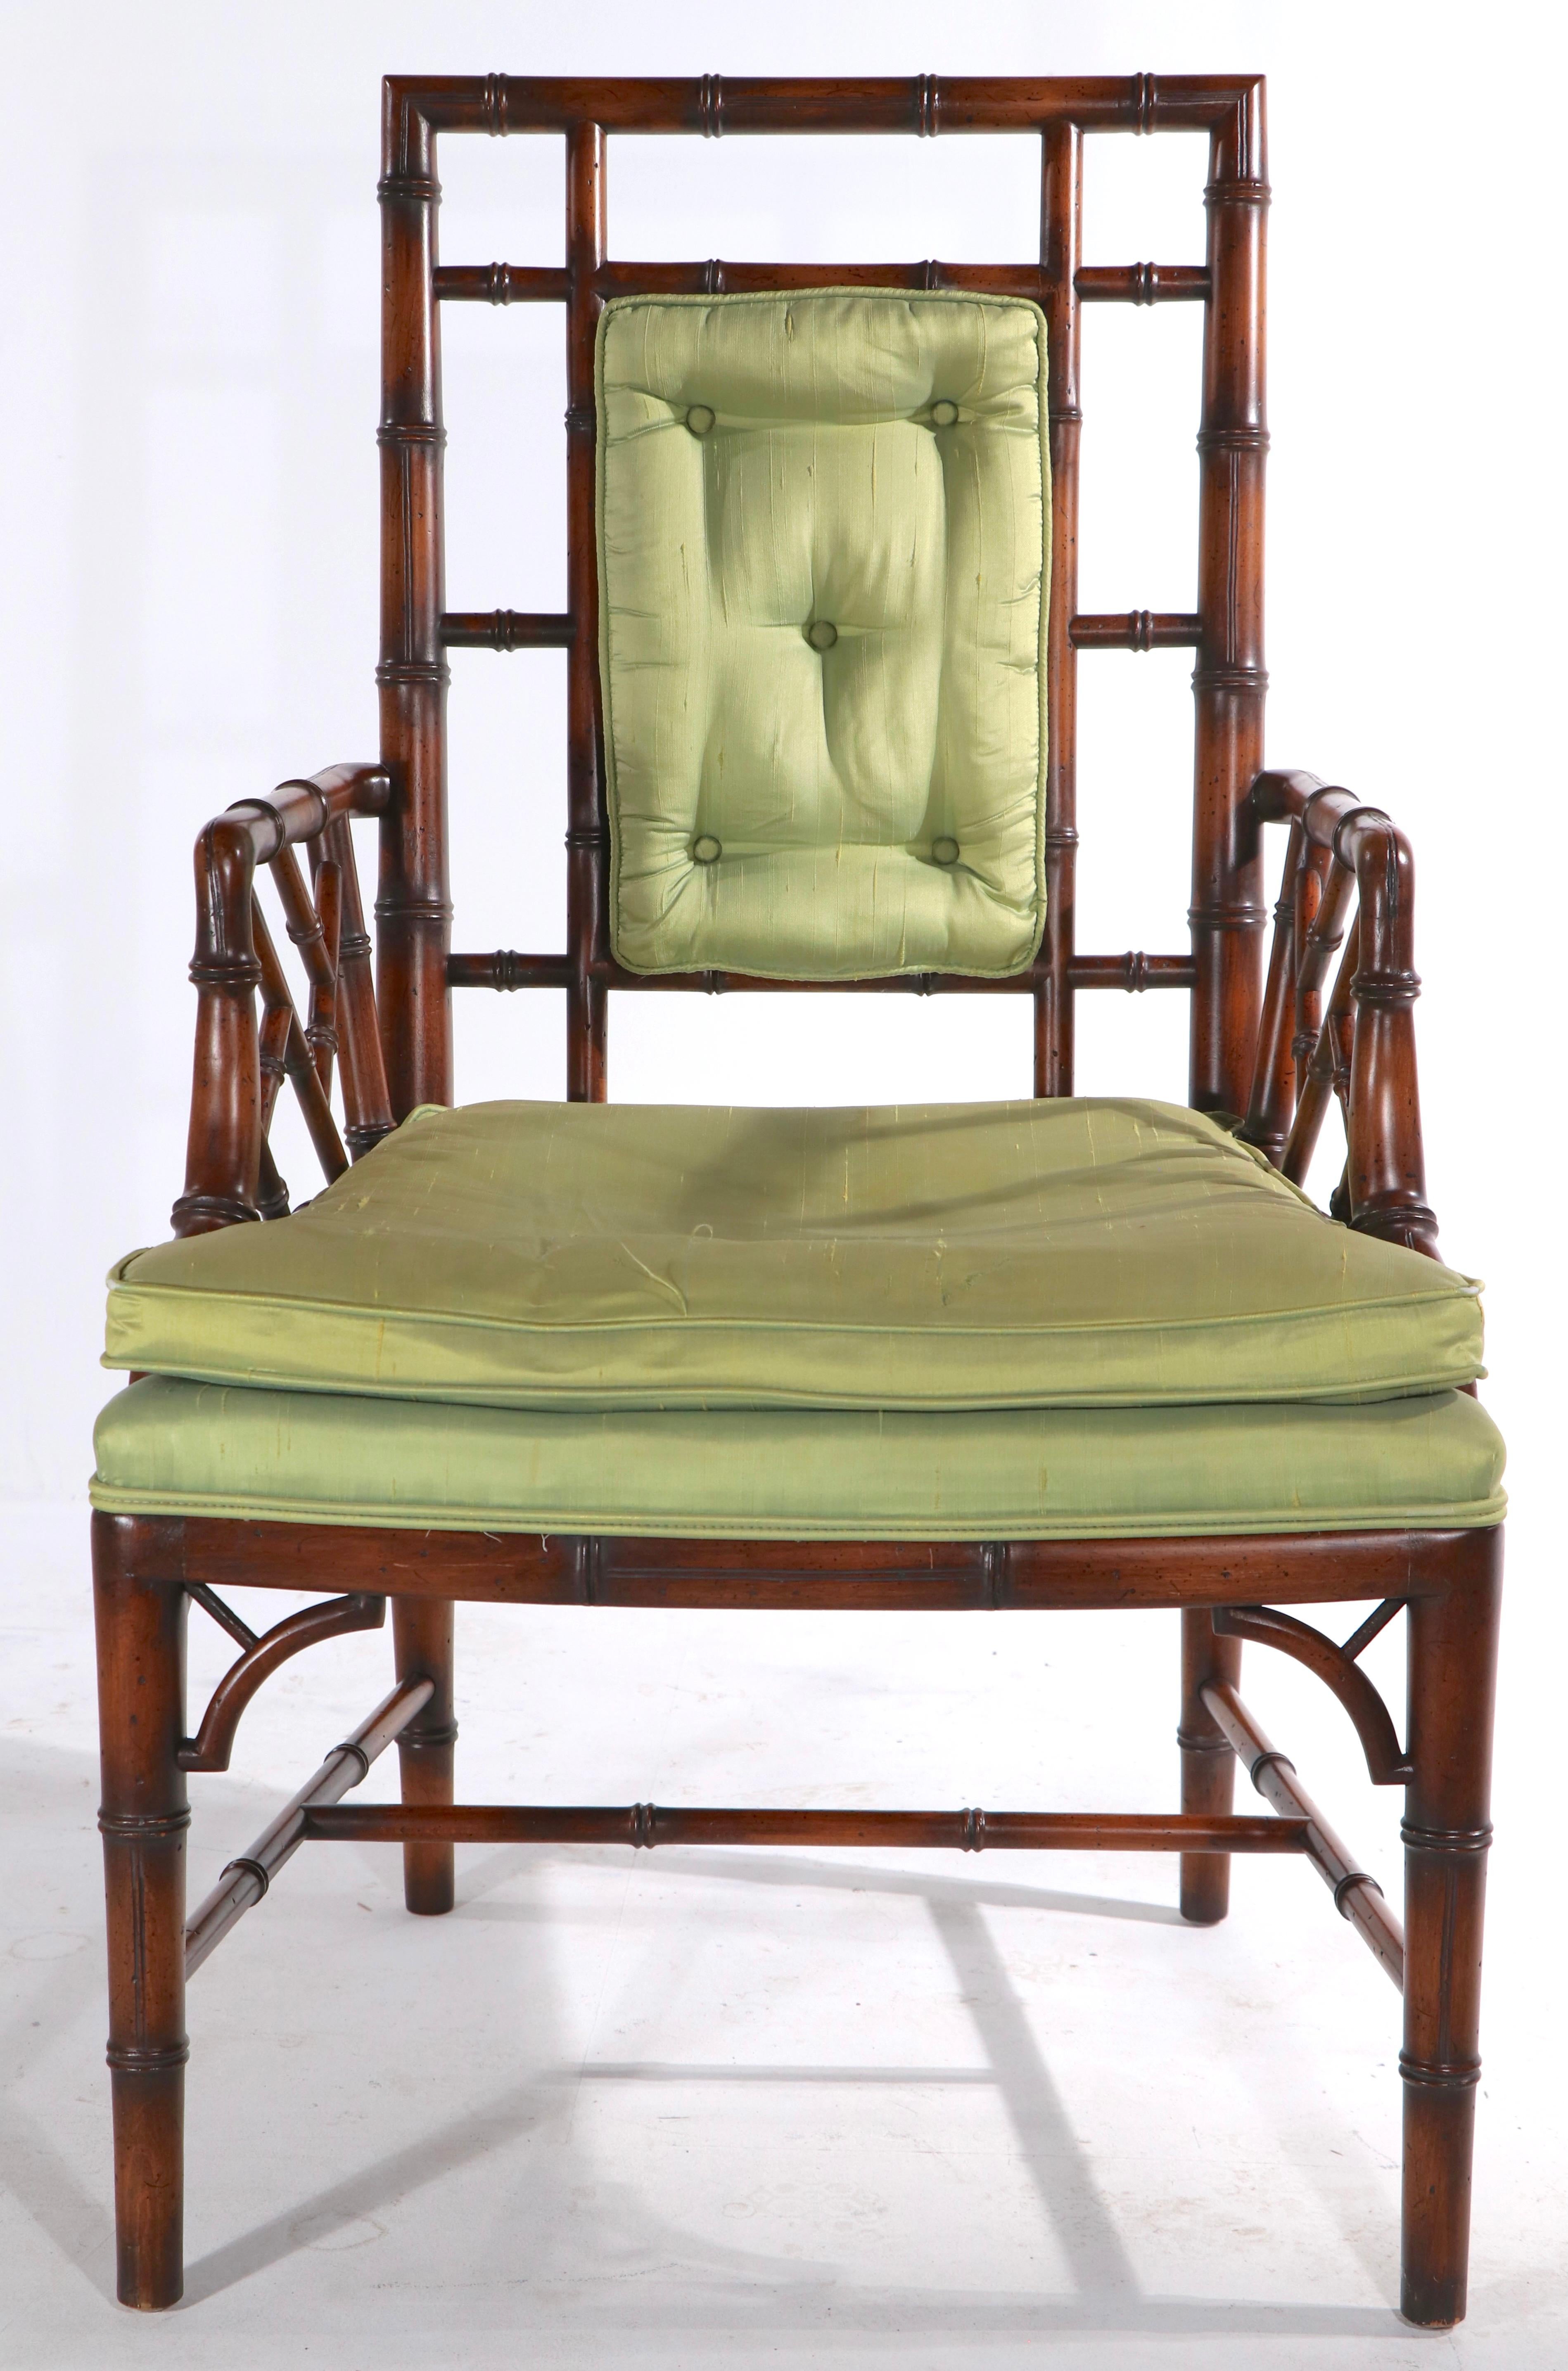 Fauteuil chic et sophistiqué en faux bambou fabriqué par le célèbre fabricant de meubles The Schoonbeck Company, connu plus tard sous le nom de Schonbeck Henredon. La chaise a un cadre en bois massif, avec une assise et un dossier rembourrés, le